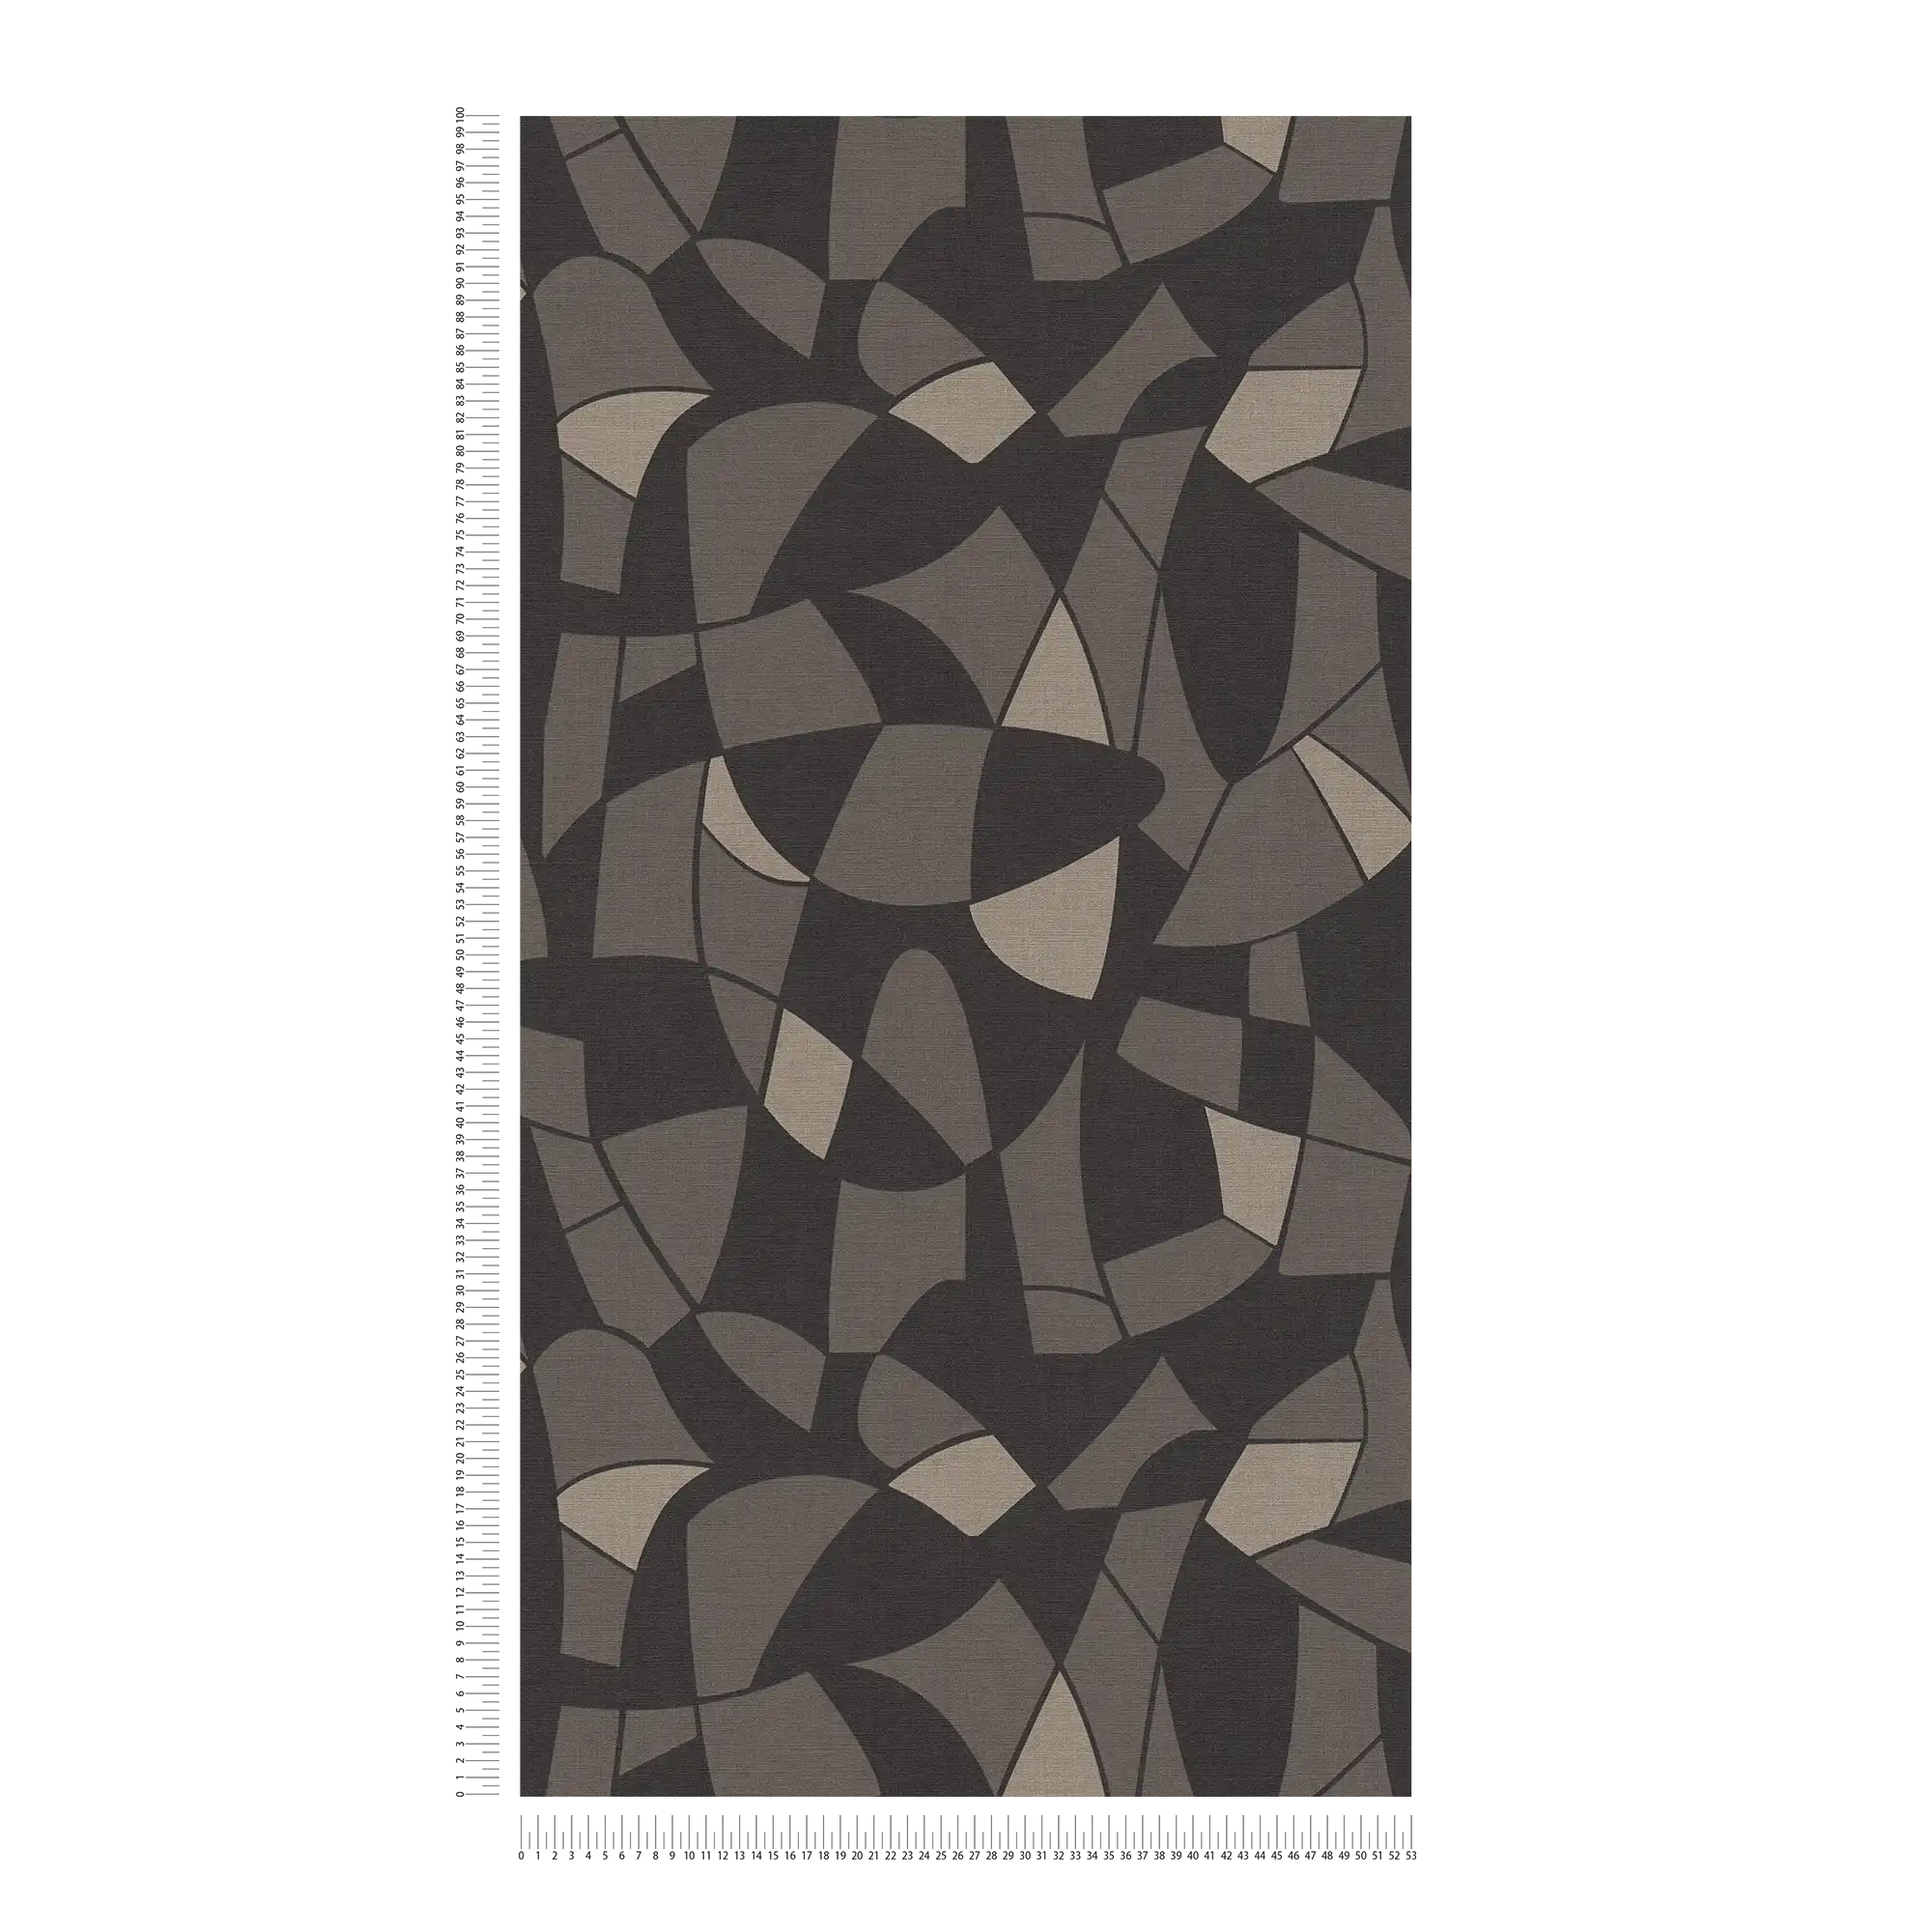             Non-woven wallpaper in geometric style - black
        